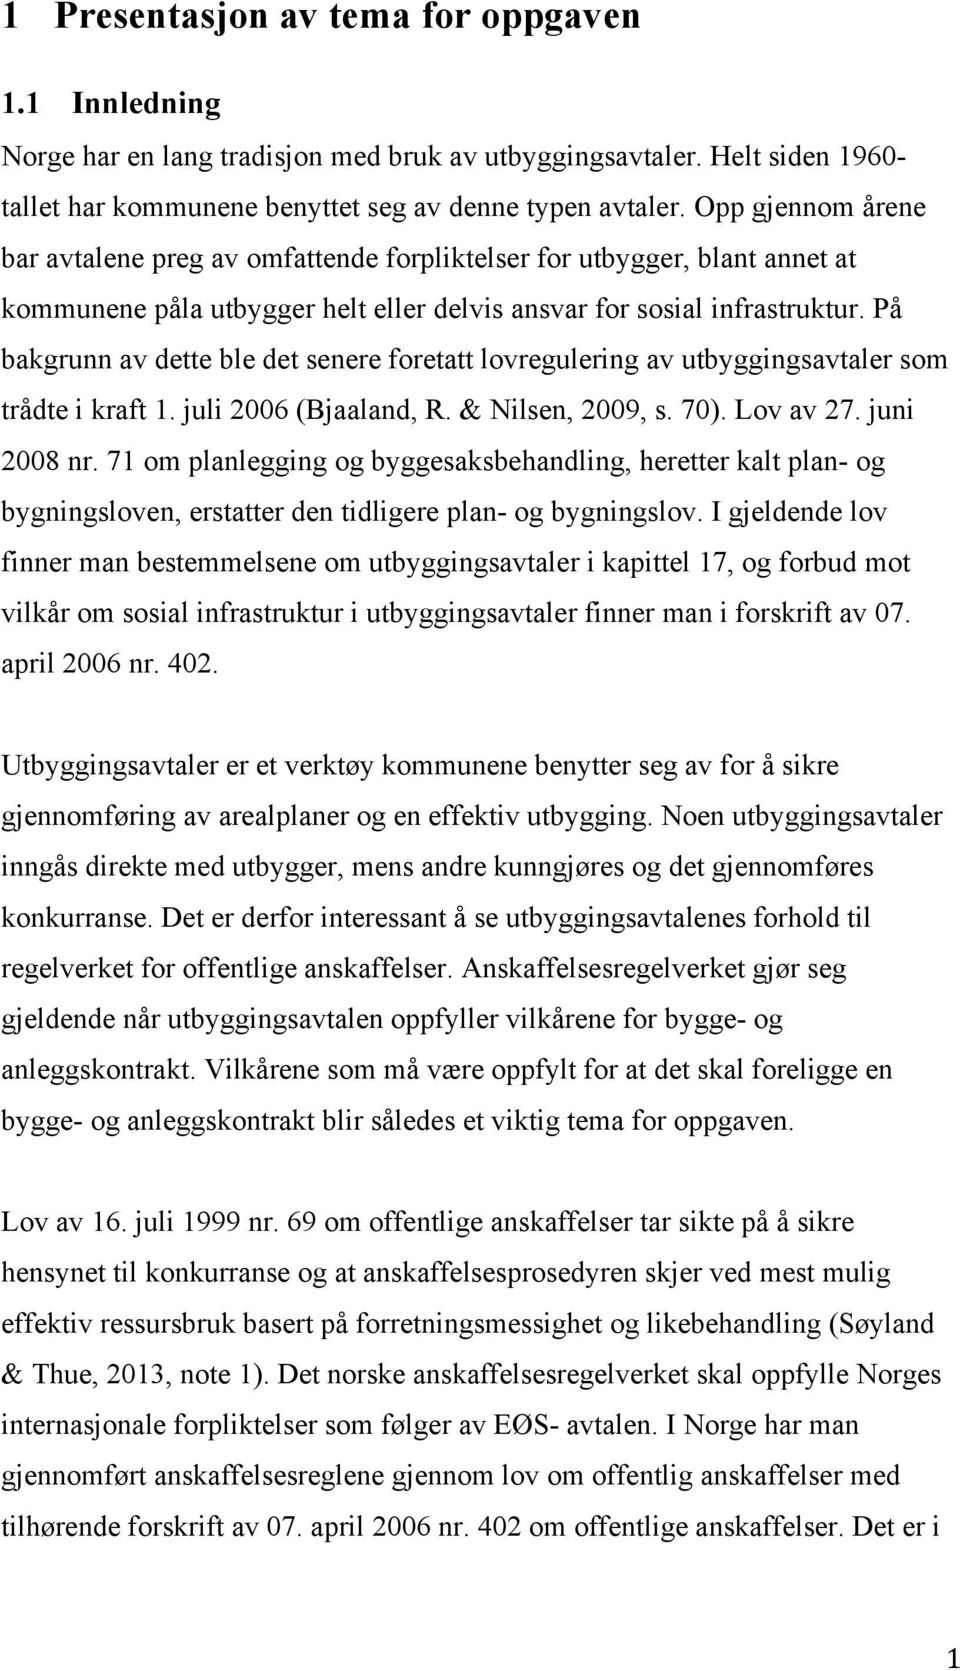 På bakgrunn av dette ble det senere foretatt lovregulering av utbyggingsavtaler som trådte i kraft 1. juli 2006 (Bjaaland, R. & Nilsen, 2009, s. 70). Lov av 27. juni 2008 nr.